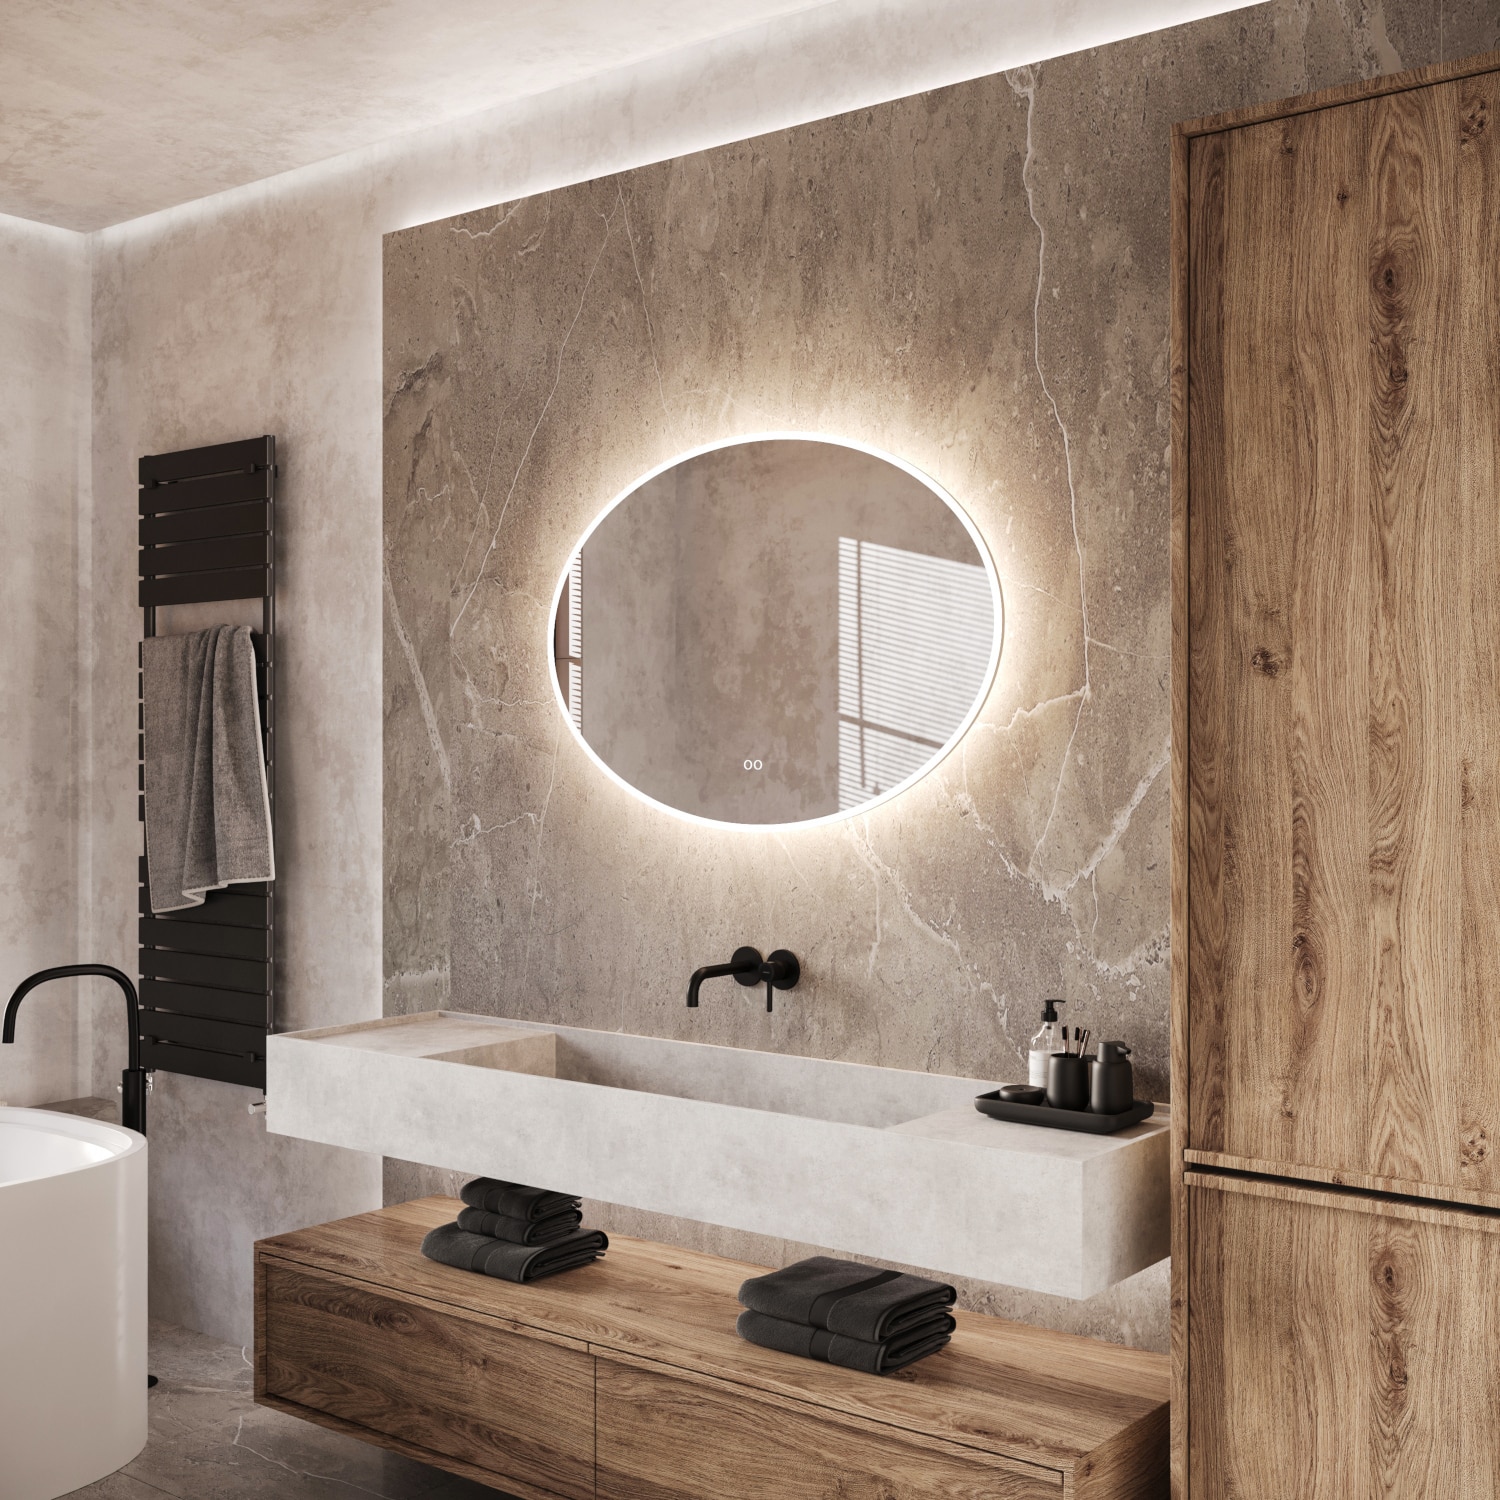 Laag Bevatten Componist Ovale badkamerspiegel met LED verlichting, verwarming, instelbare  lichtkleur en dimfunctie 100x70 cm - Designspiegels